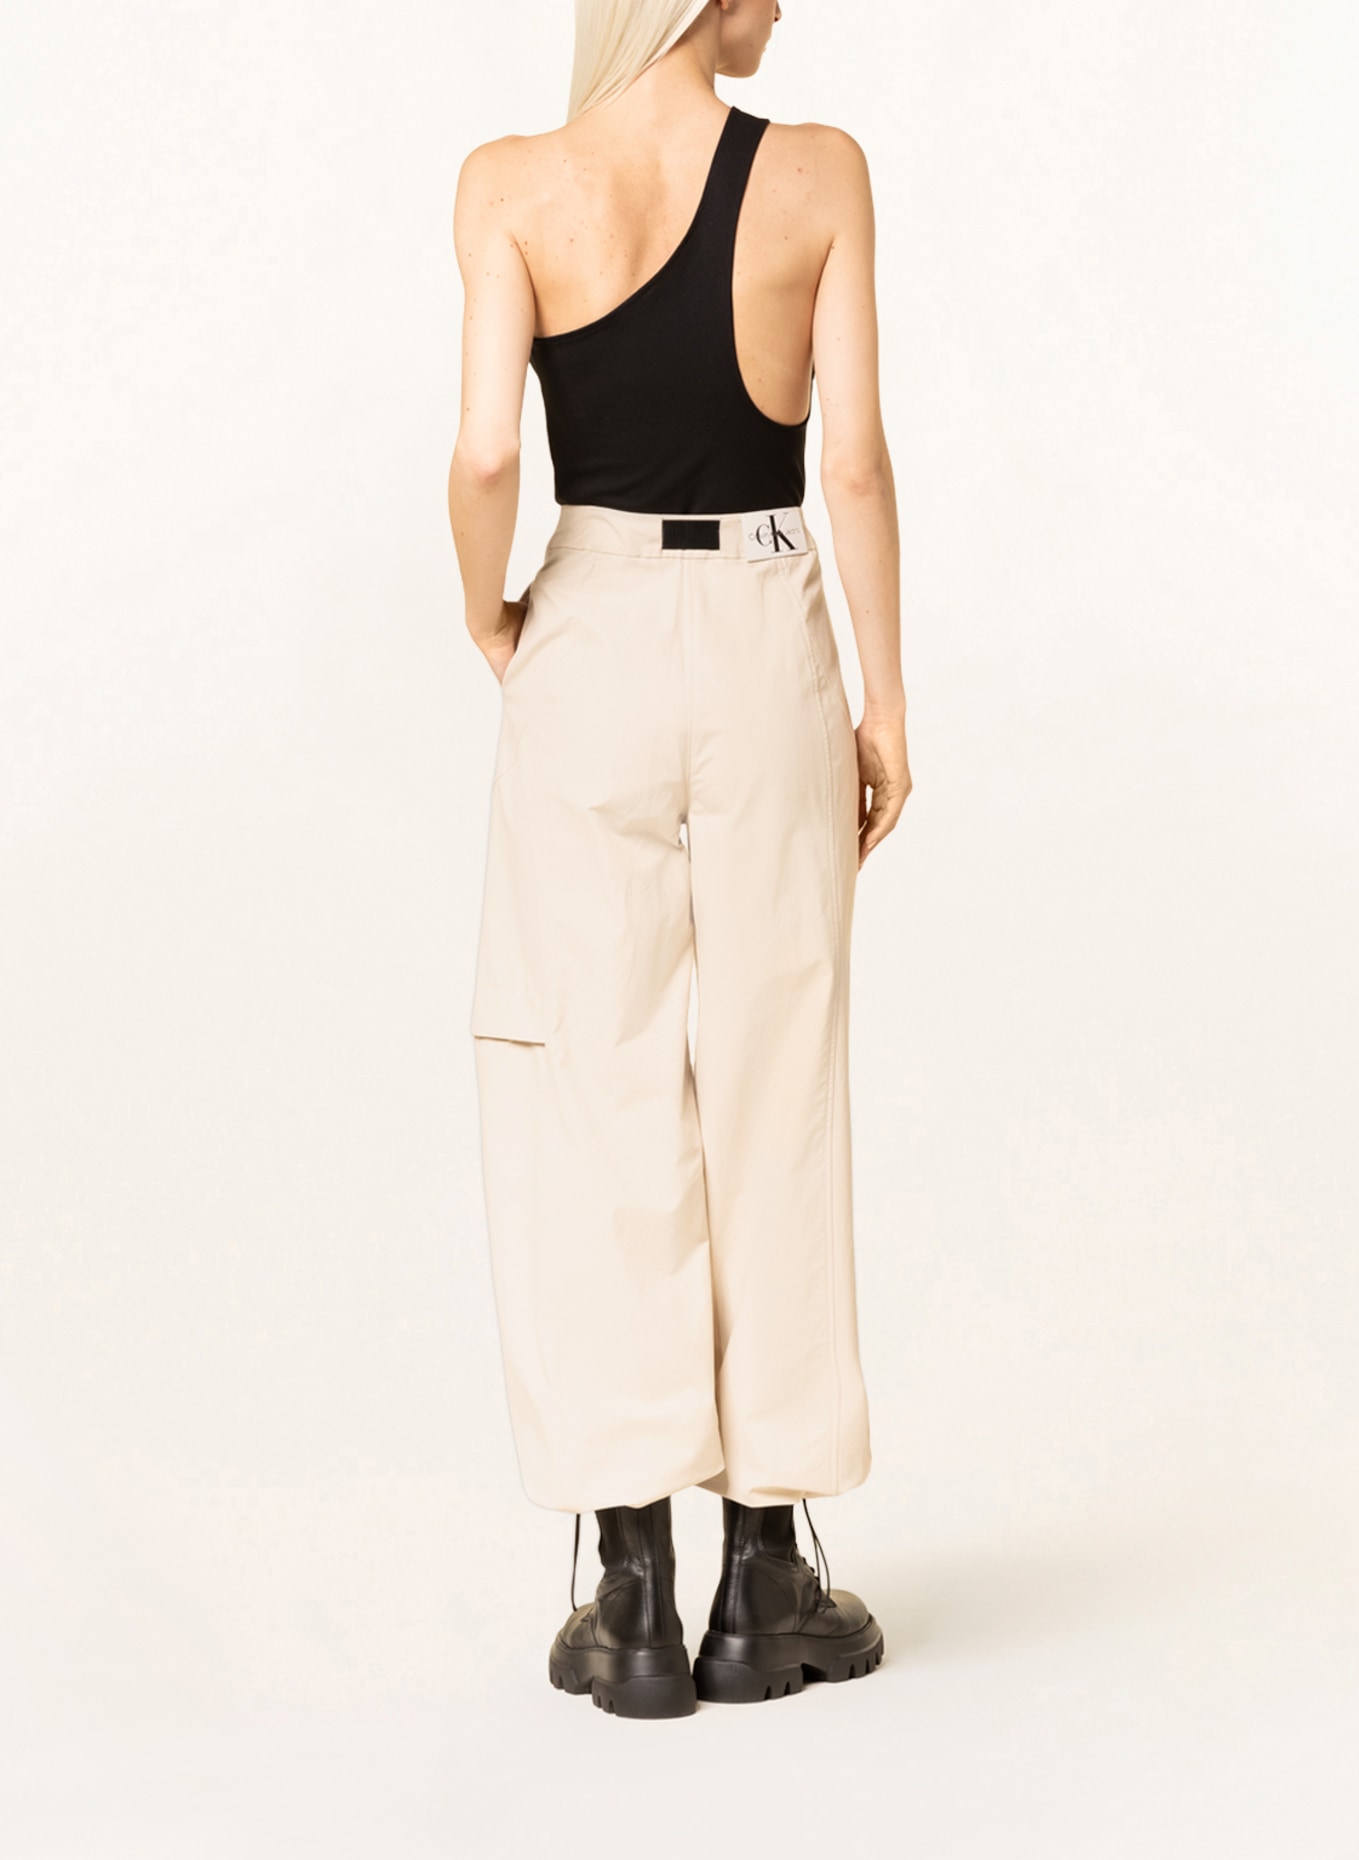 Calvin Klein Jeans One-shoulder top, Color: BLACK (Image 3)